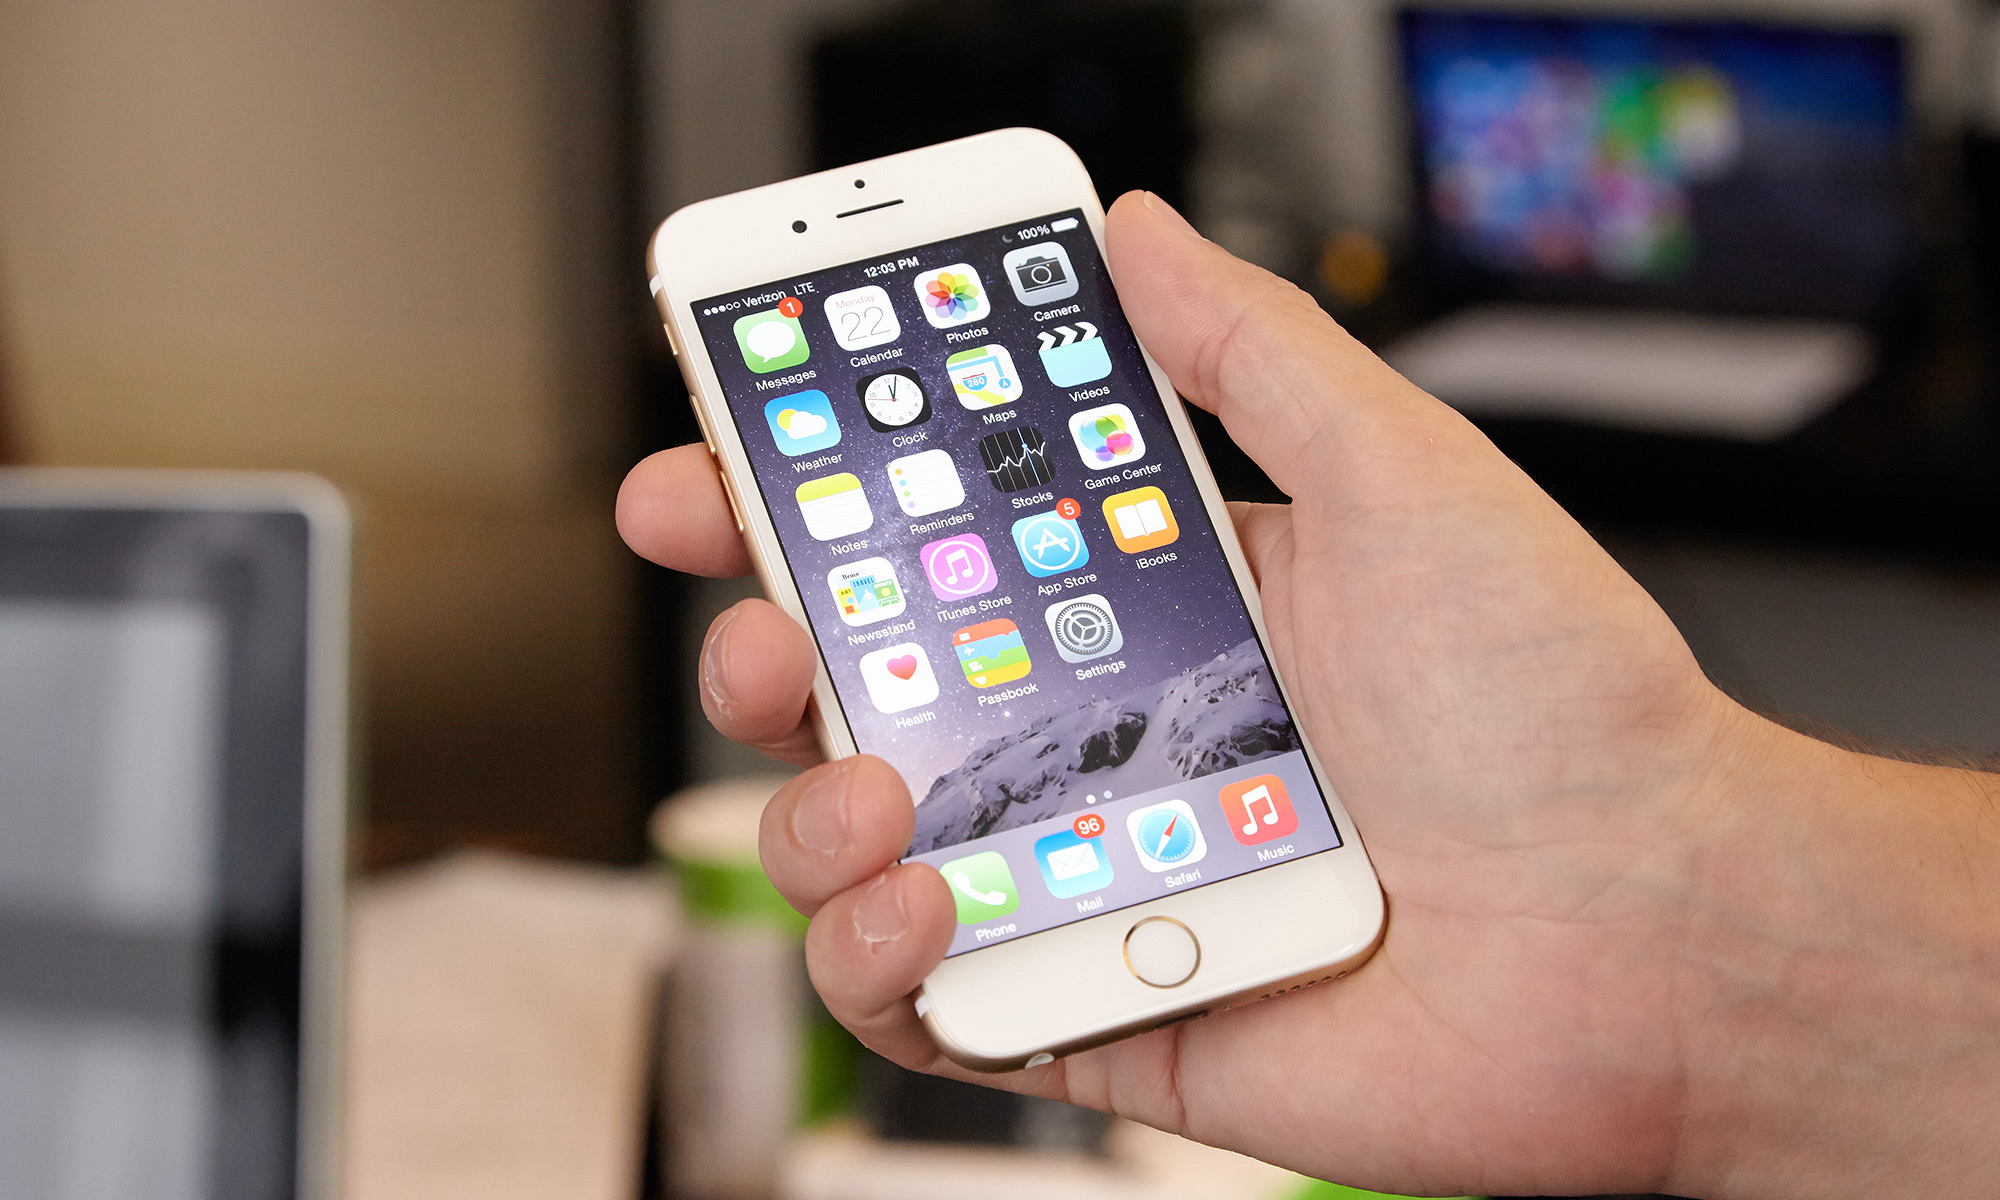 هستيري خاصة نسبه مئويه  How Much Is Your iPhone 6 / 6 Plus / 6s / 6s Plus Worth Now? | Tom's Guide